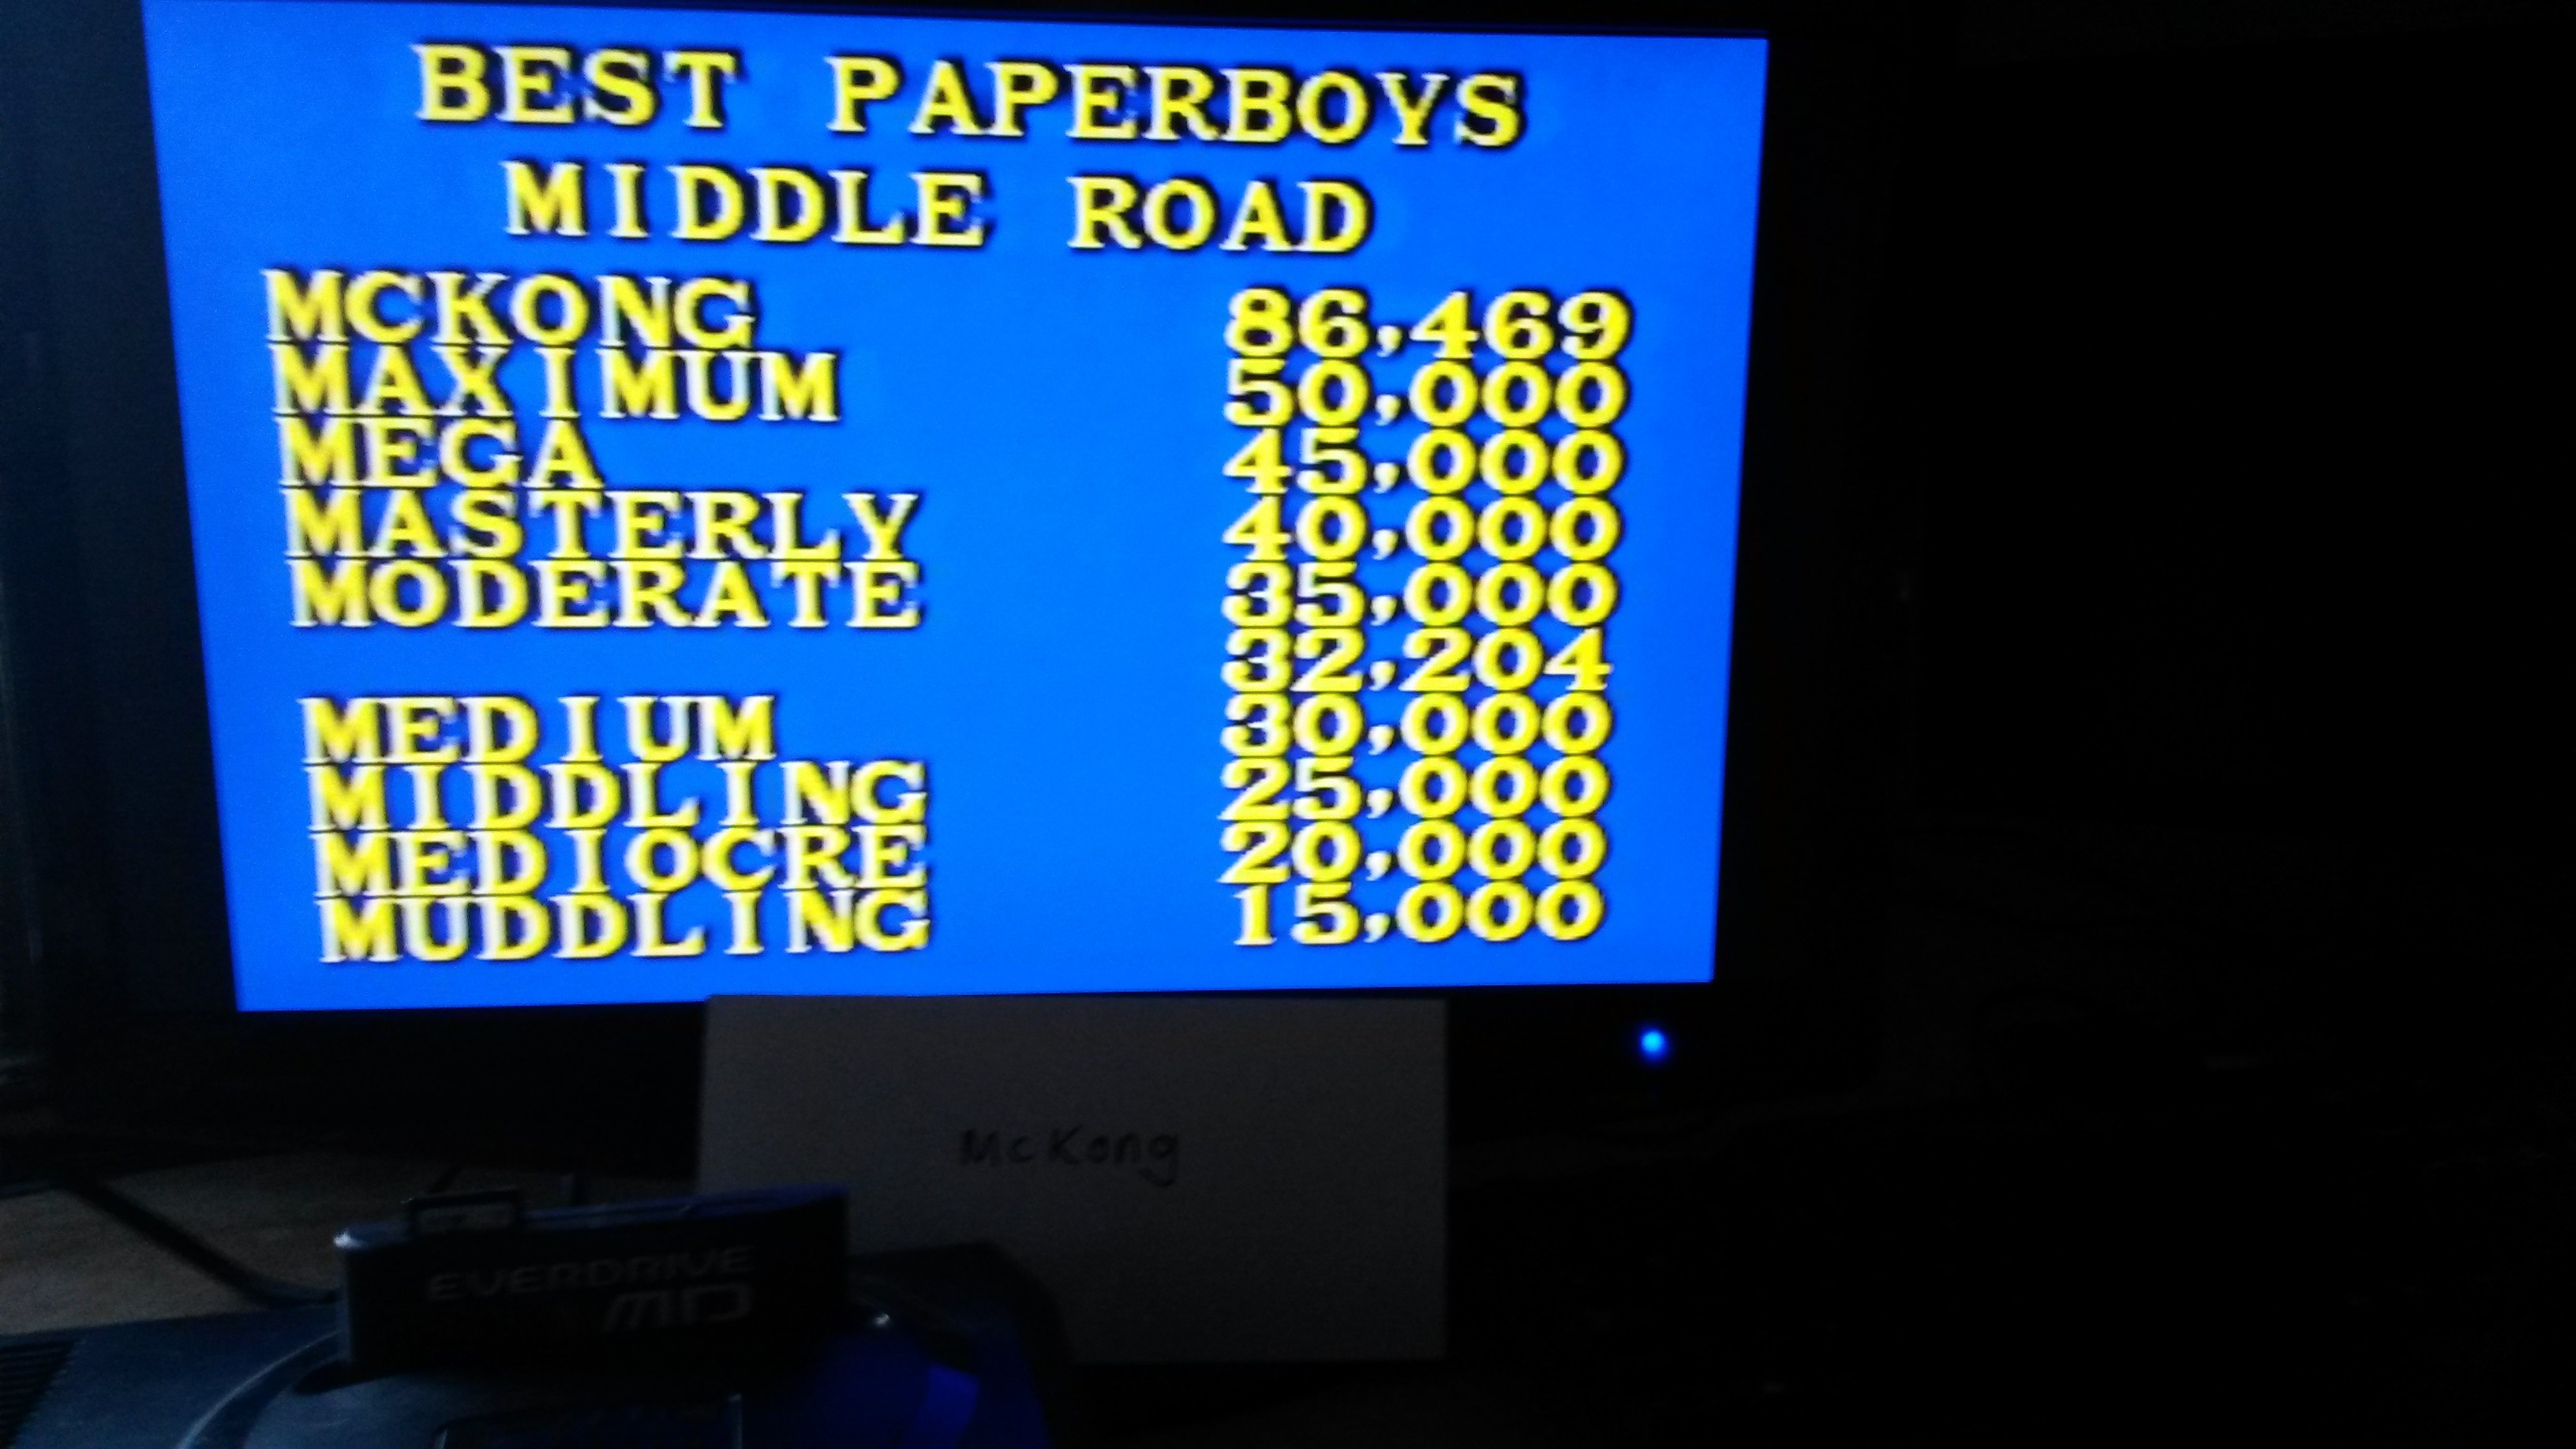 McKong: Paper Boy: Middle Road [Easy] (Sega Genesis / MegaDrive) 86,469 points on 2015-06-23 12:34:20